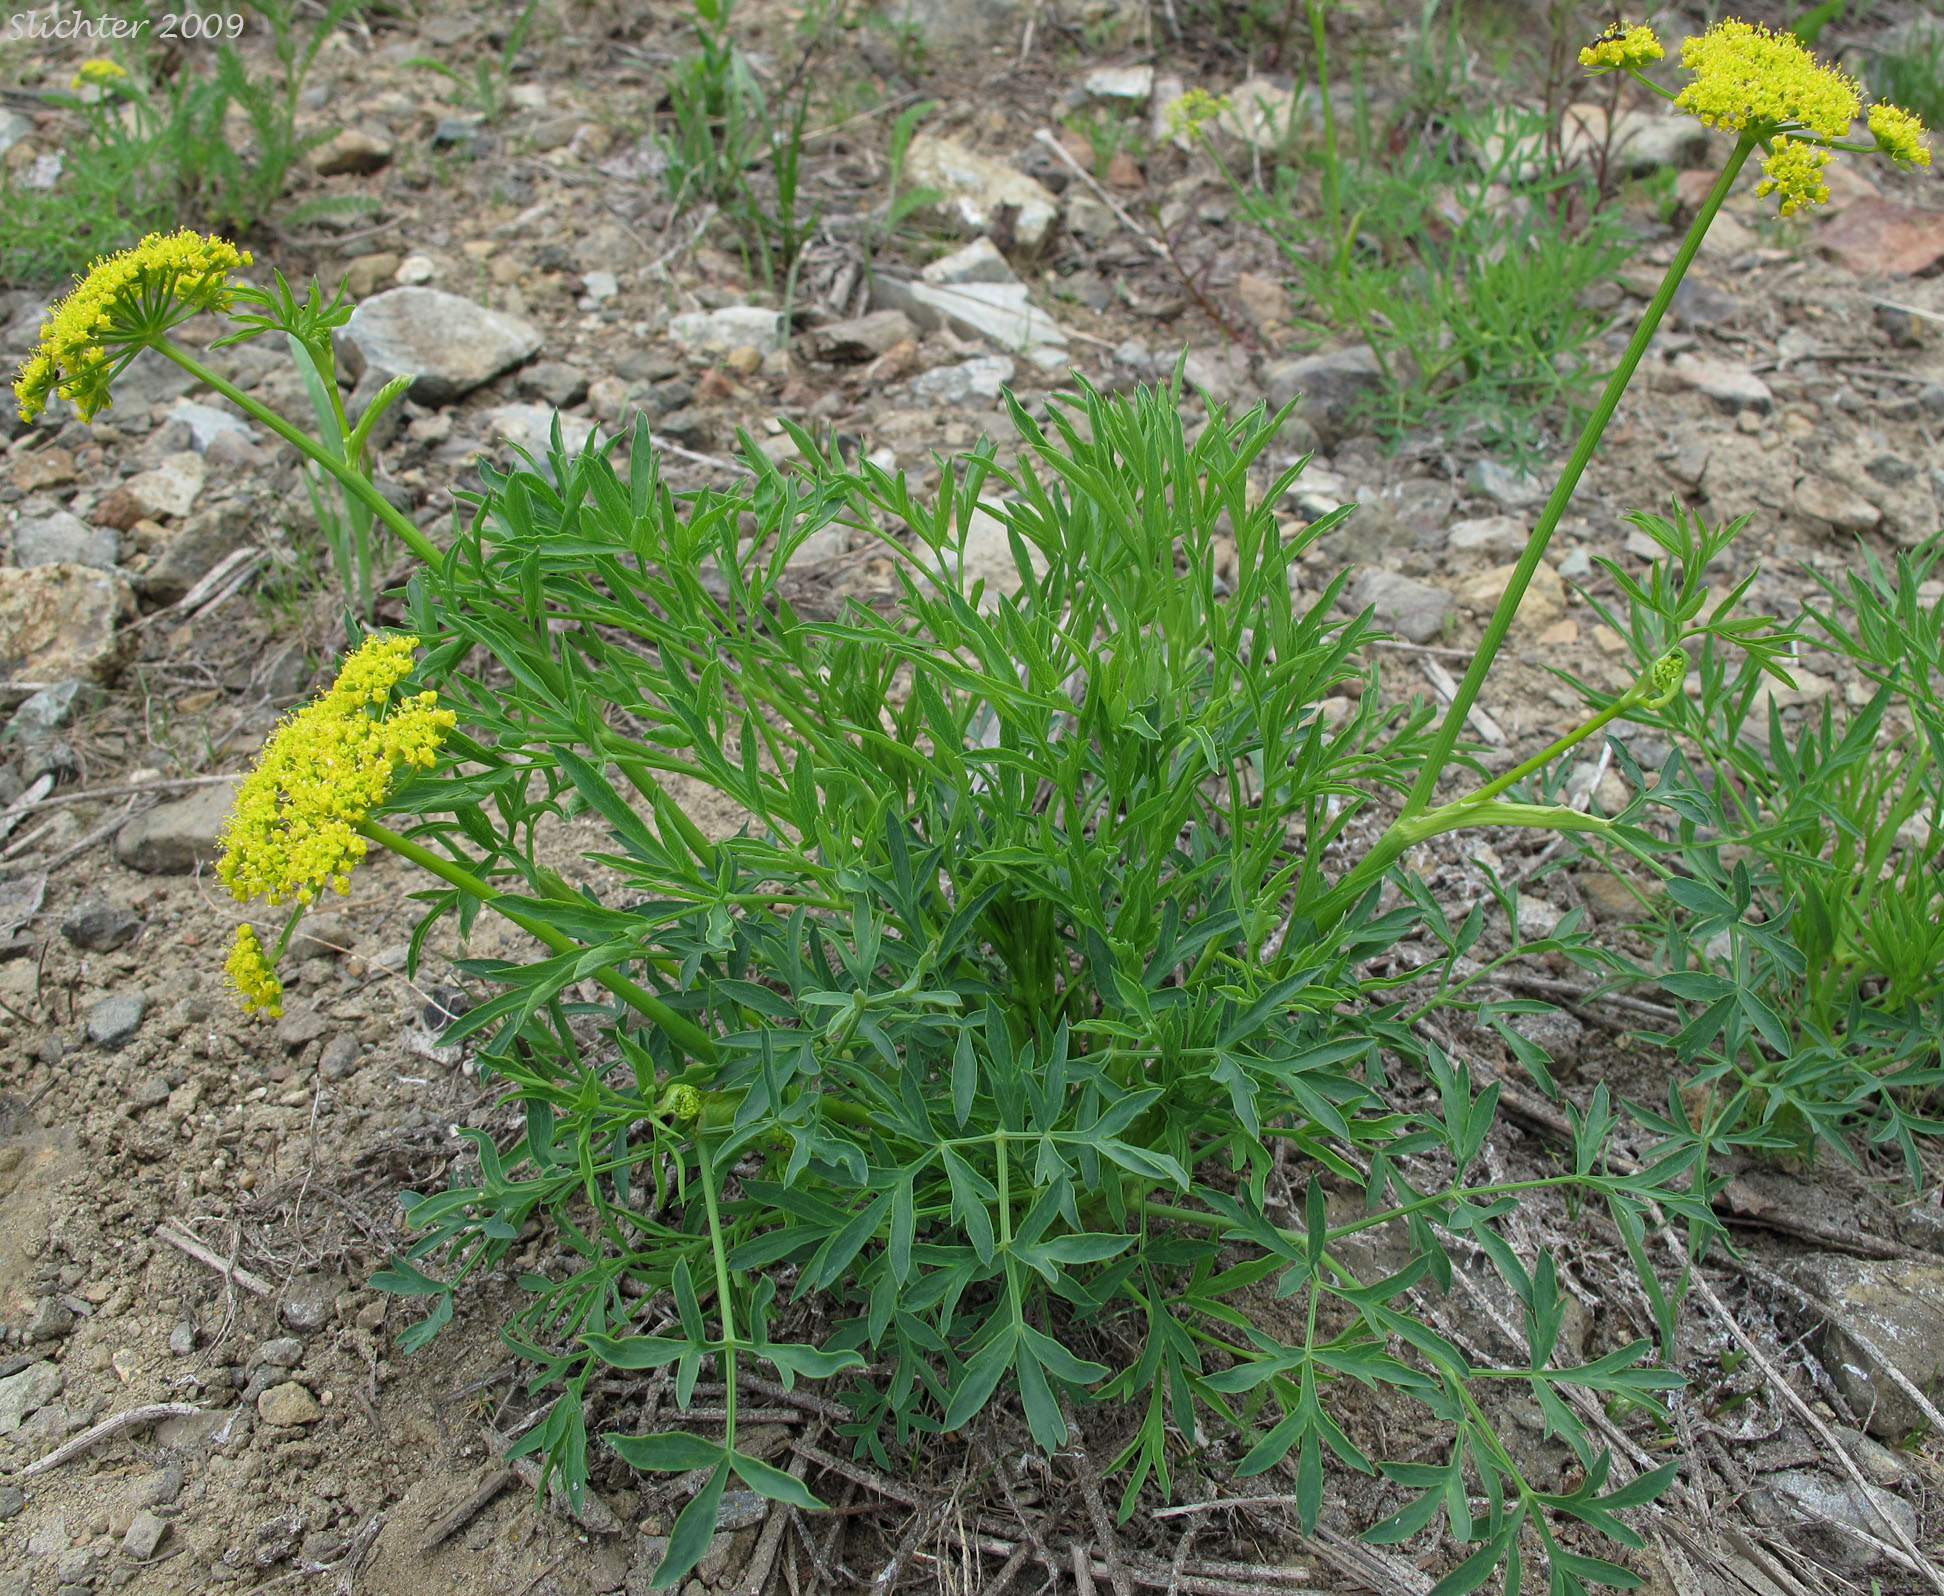 Brandegee's Lomatium, Brandegee's Desert-parsley: Lomatium brandegeei (Synonym: Cynomarathrum brandegeei, Lomatium brandegei)